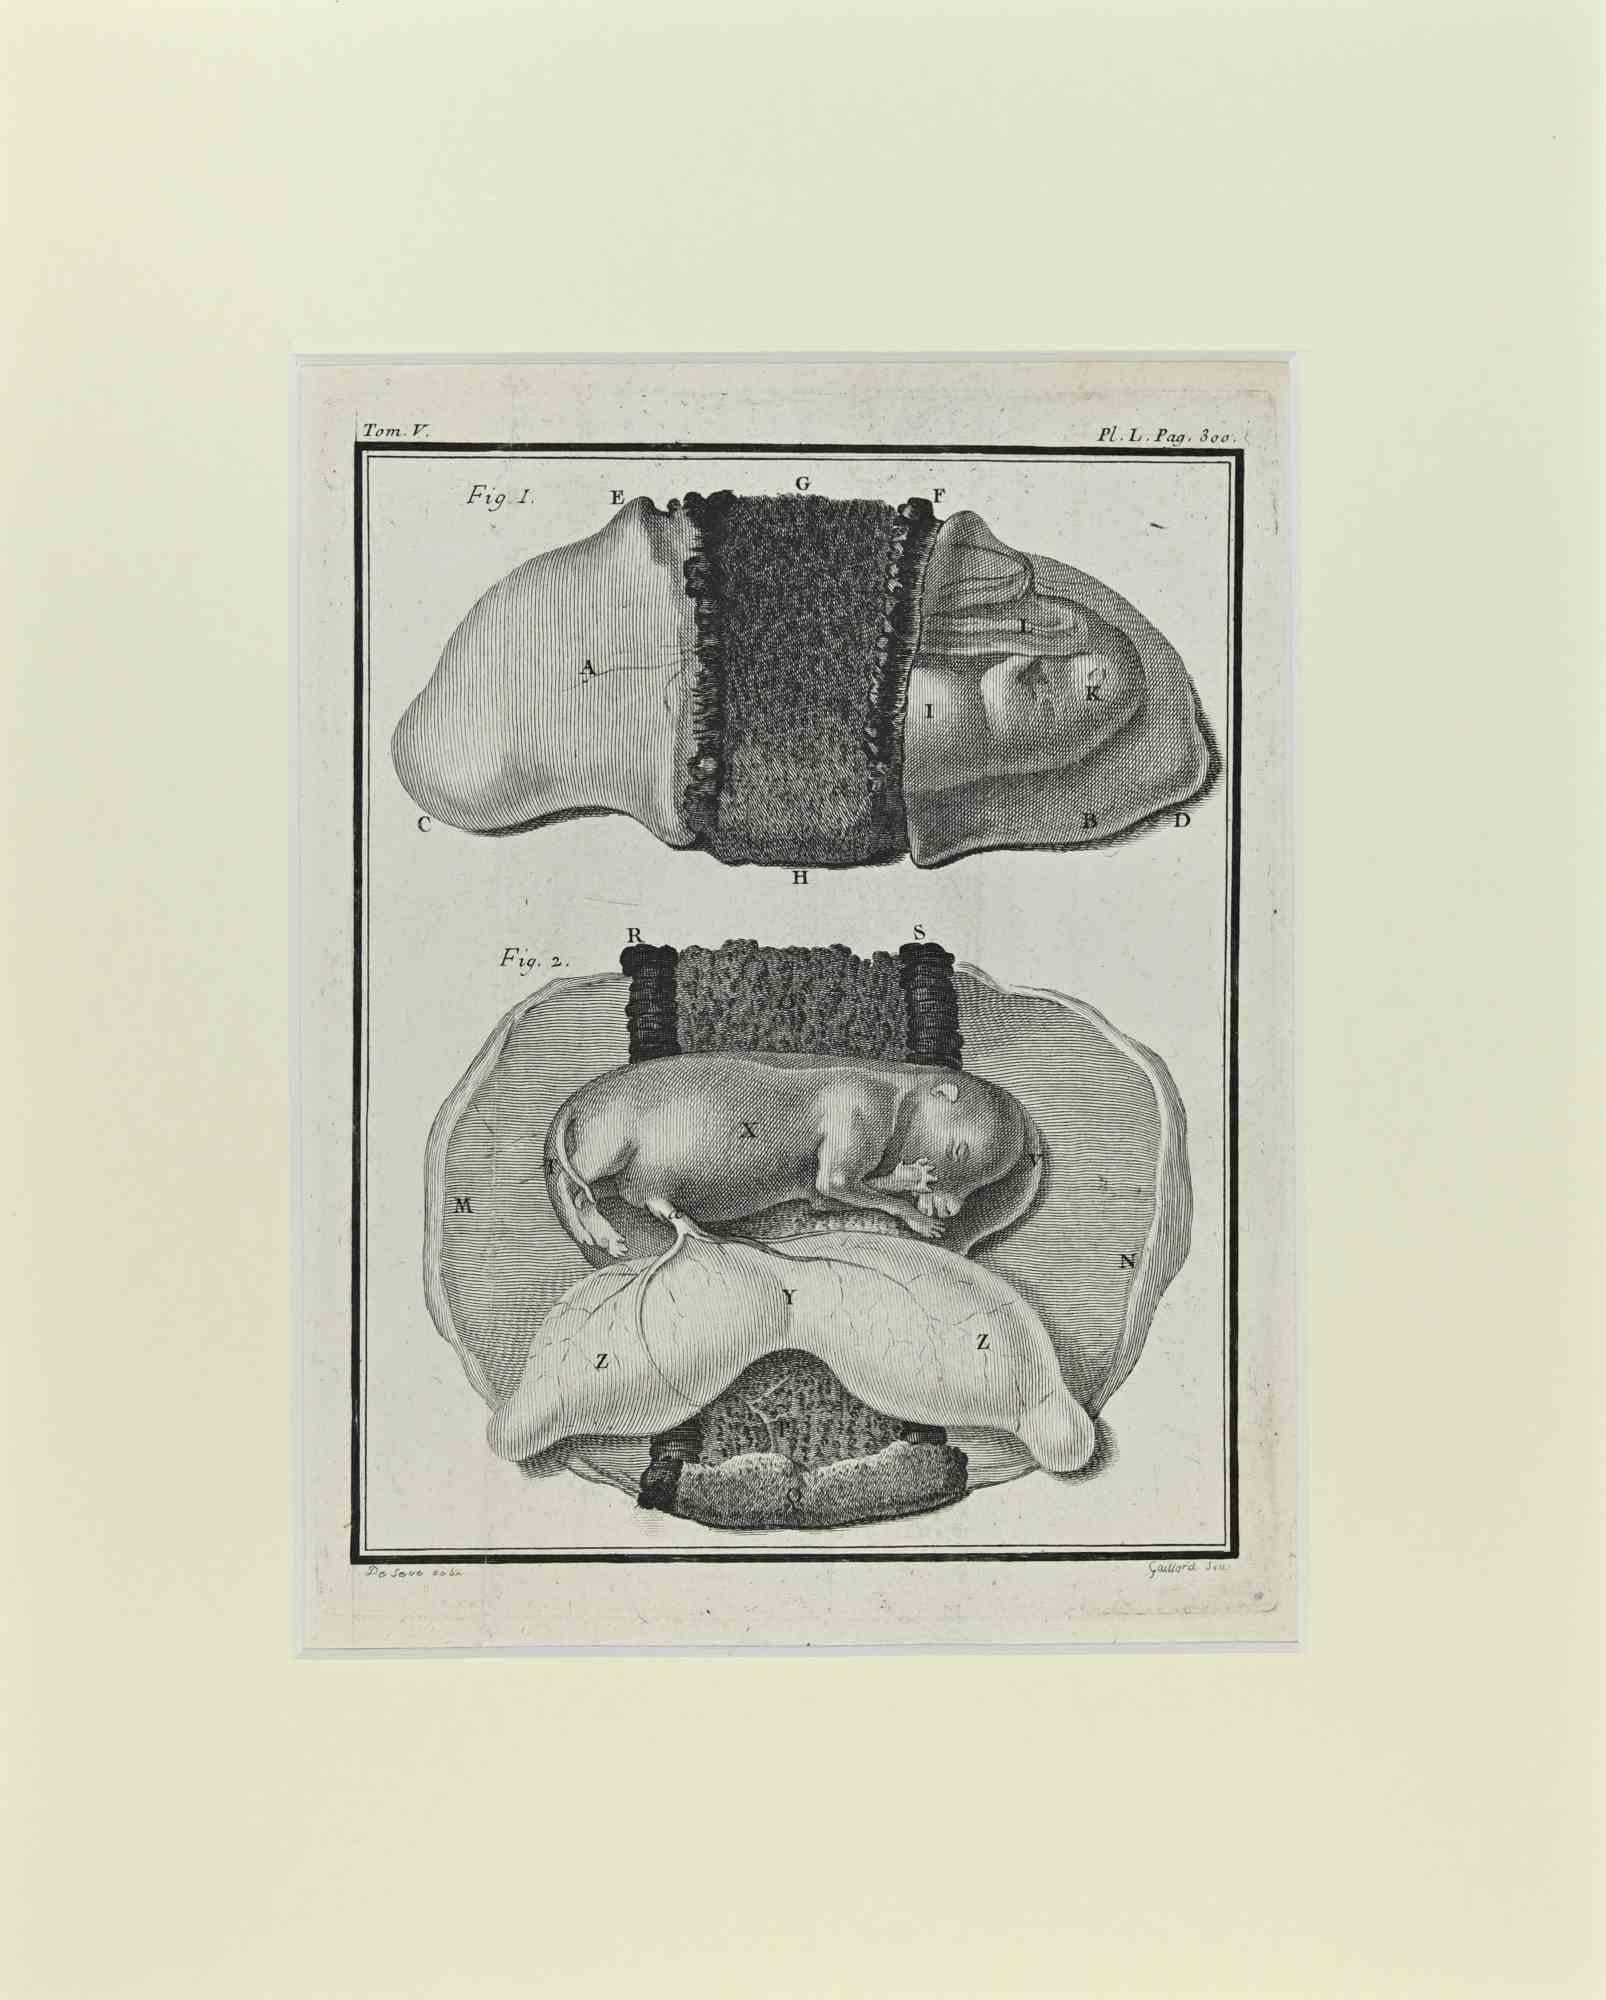 Figurative Print Jacques de Seve - Fœtus - Chien - Gravure de Jacques De Sève - 1771